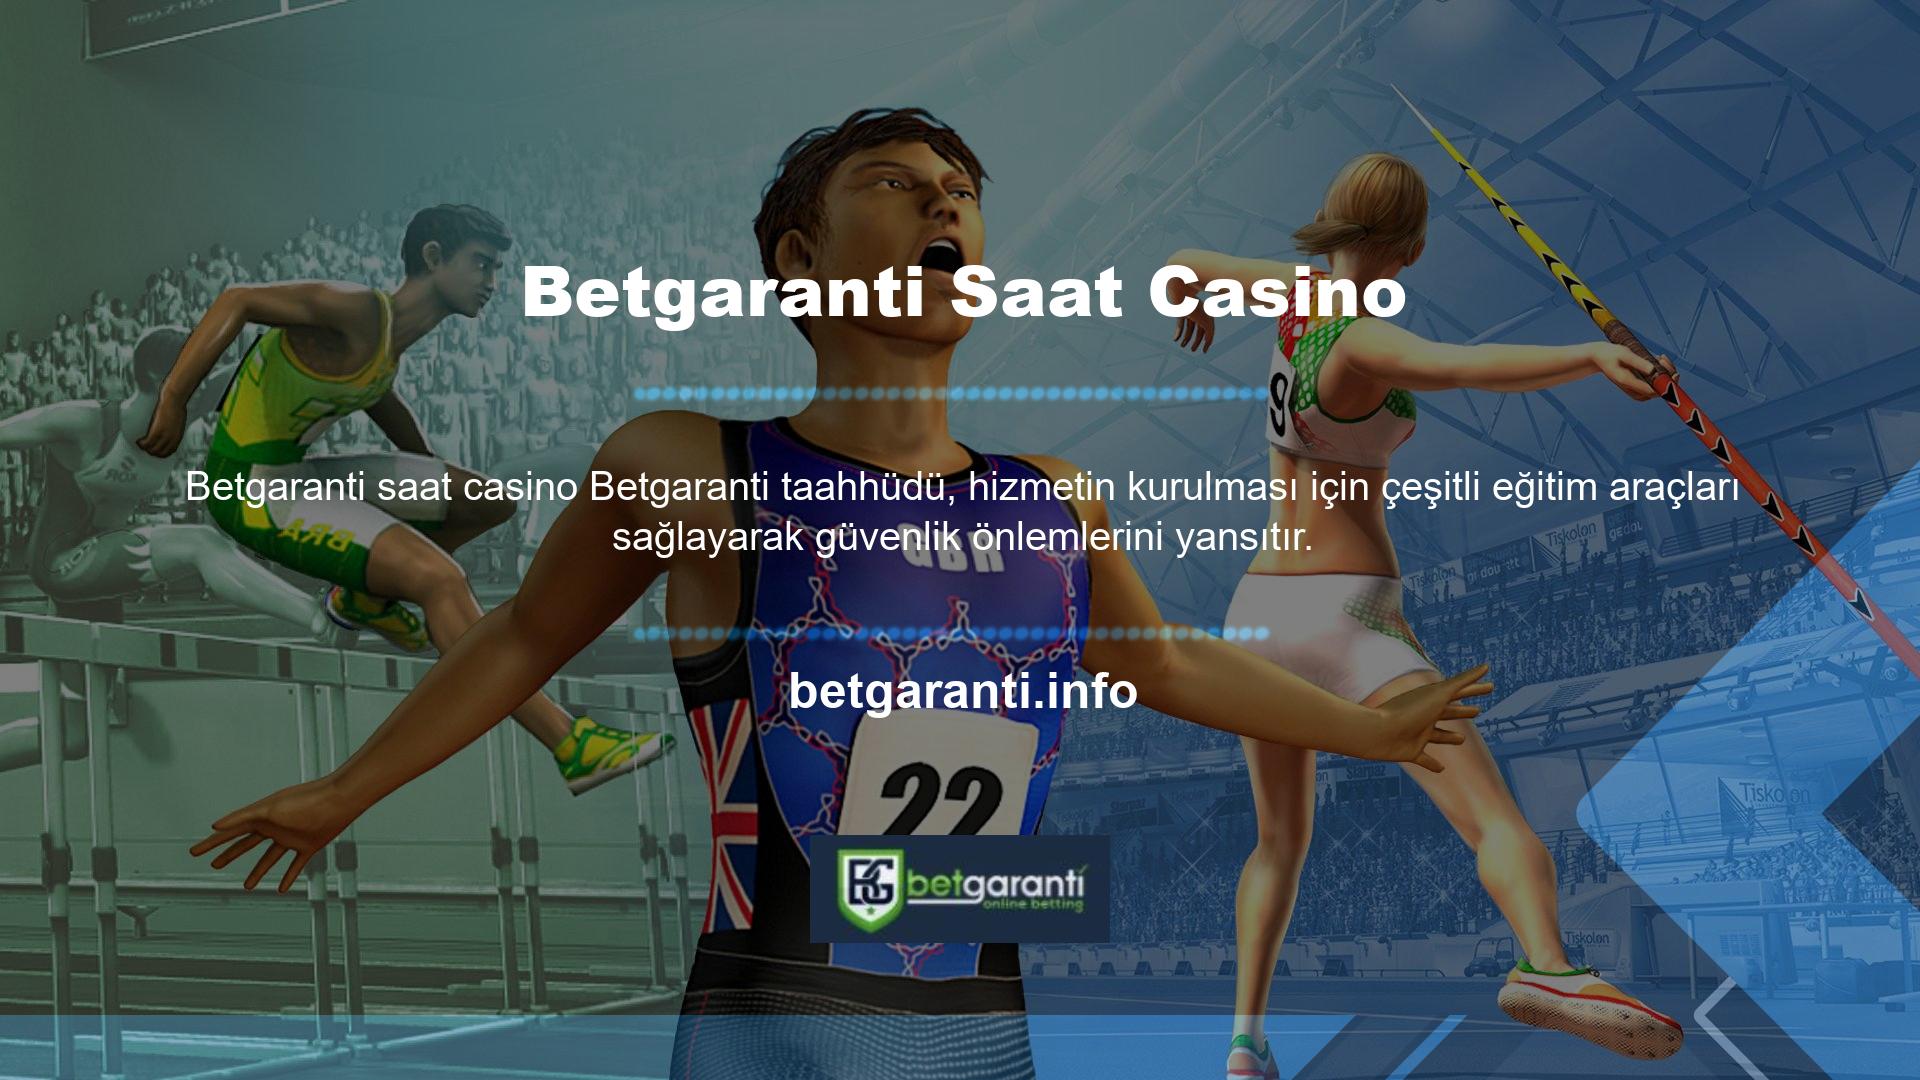 Betgaranti ayrıca müşteri hizmetleri sağlar ve kesintisiz gerçek zamanlı hizmet sağlayan basit bir UI tasarımı ile iletişim hatlarını destekler